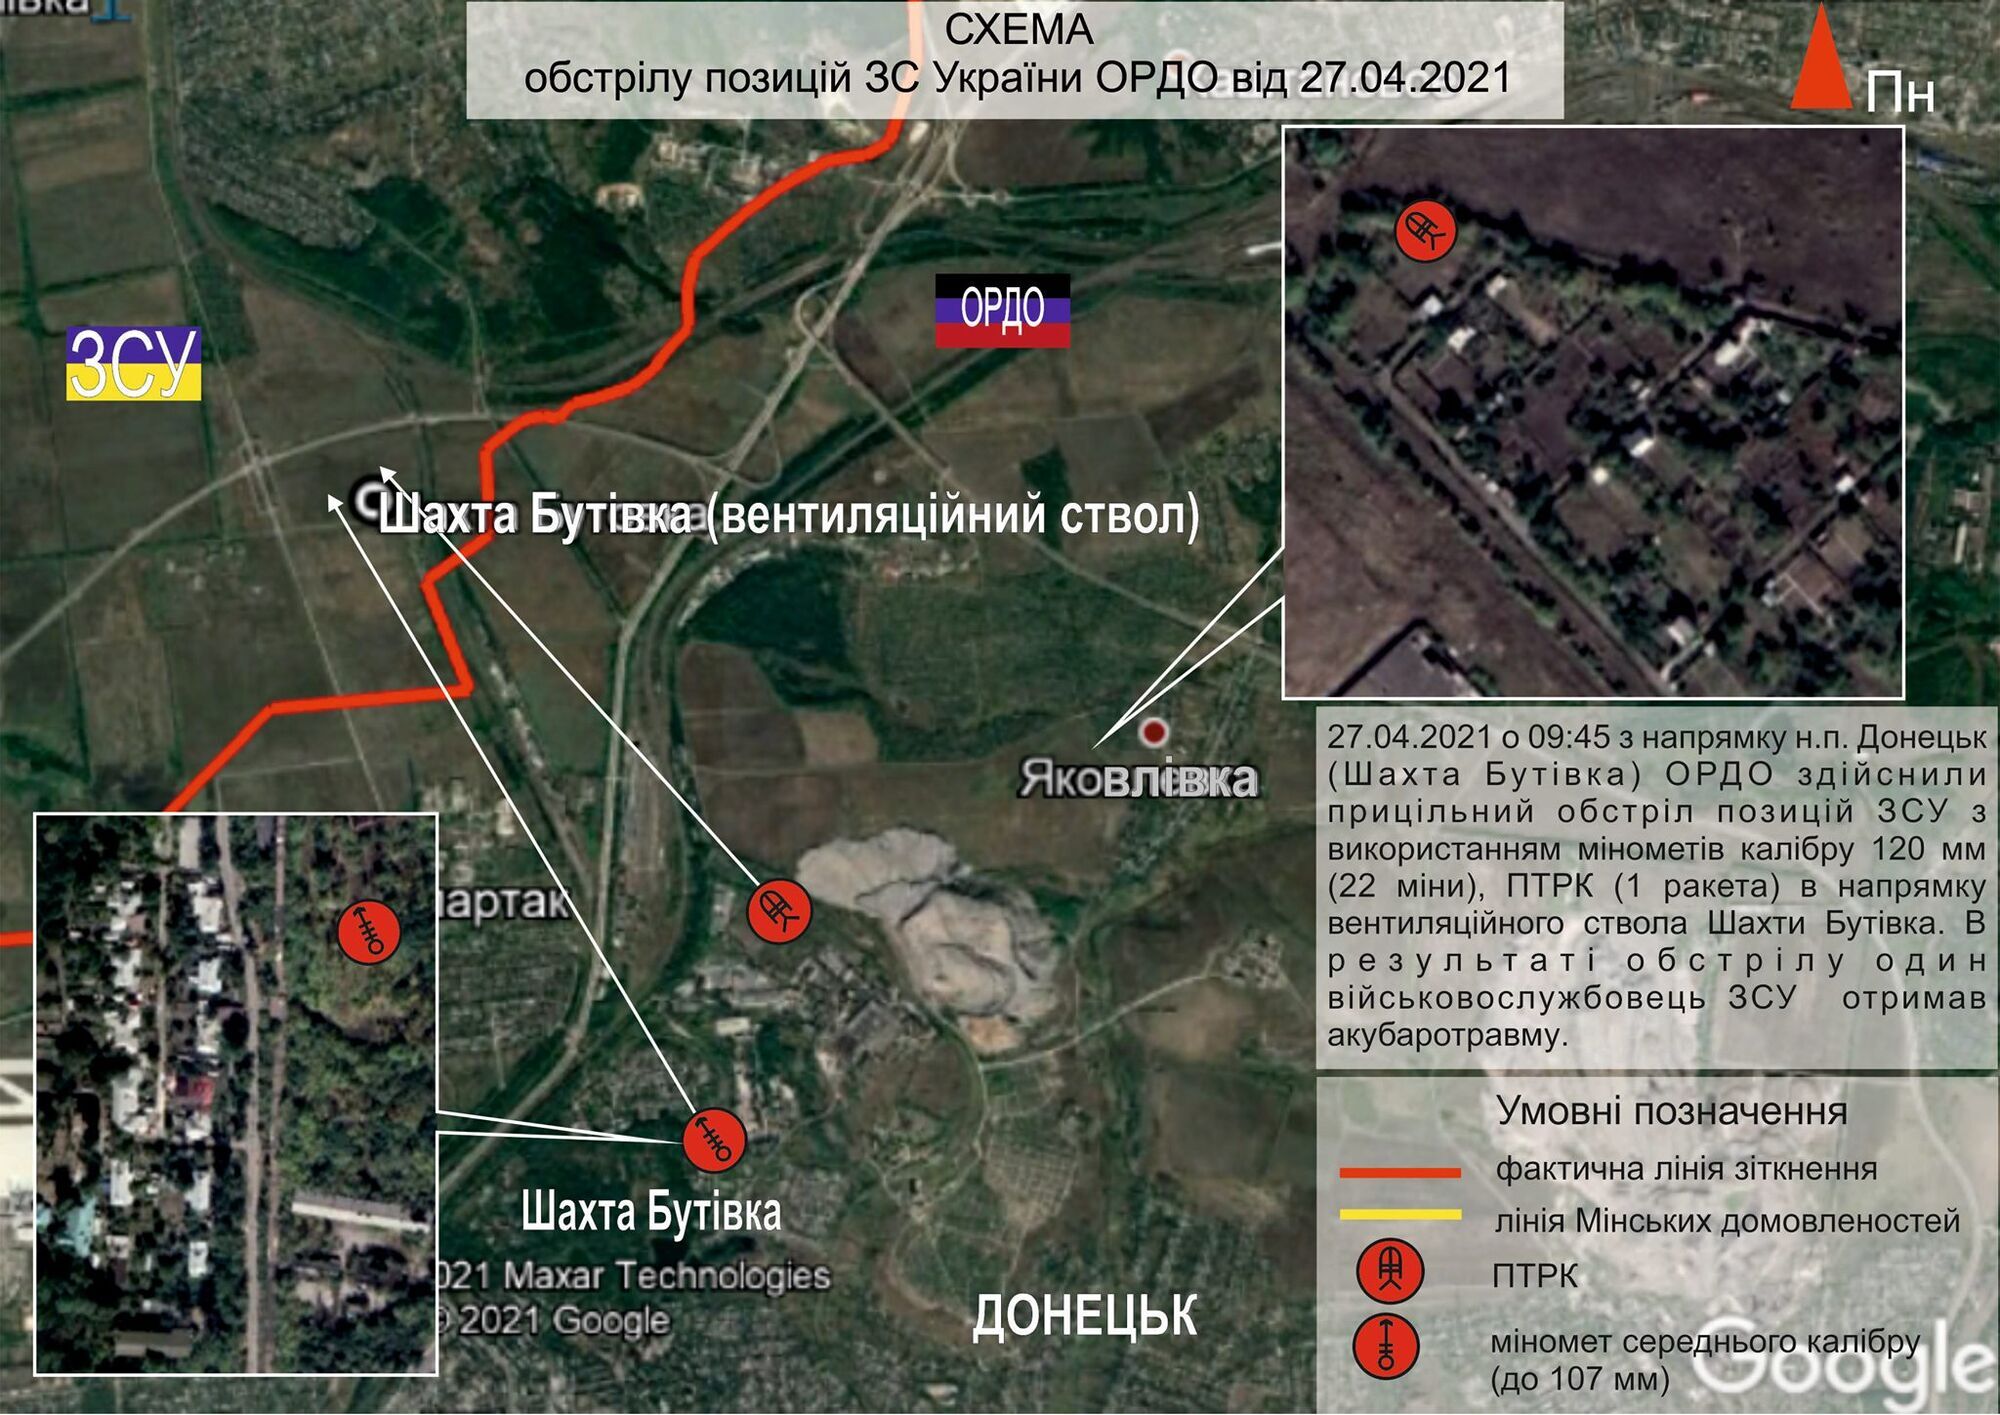 Найманці РФ захопили щоглу системи ОБСЄ, яка розташована на території шахти "Октябрьская" в Донецьку